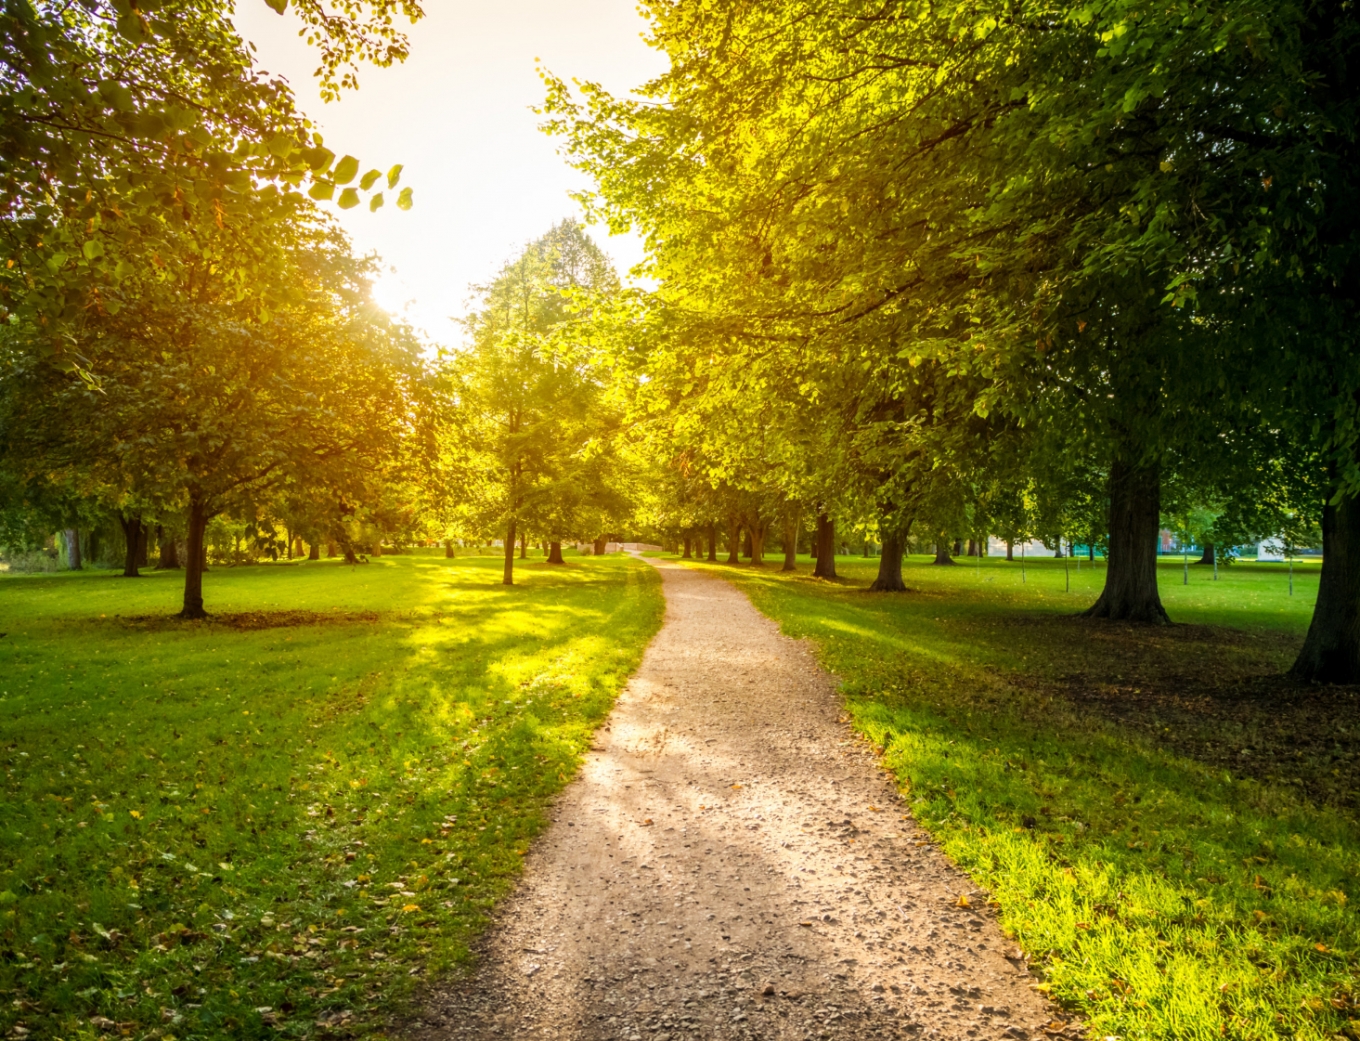 Ratajski Park w Poznaniu stanie się bardziej zielony dzięki przeznaczonym środkom budżetowym